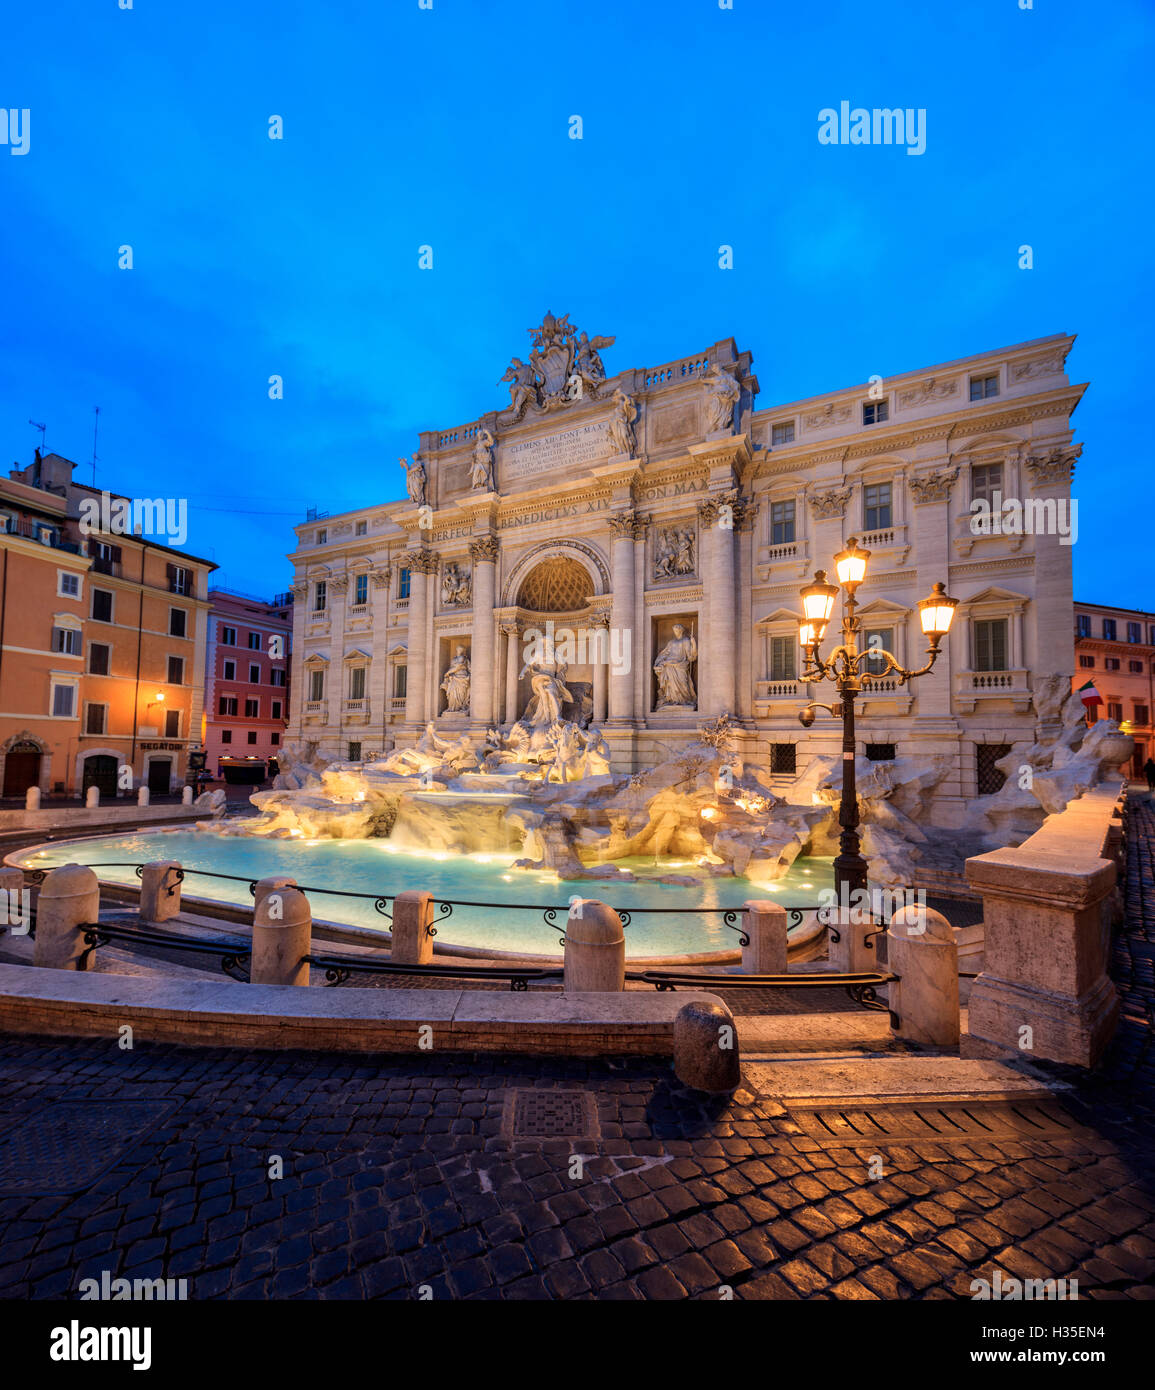 Panorama di Fontana di Trevi illuminata da lampade stradali e le luci al crepuscolo, Roma, lazio, Italy Foto Stock